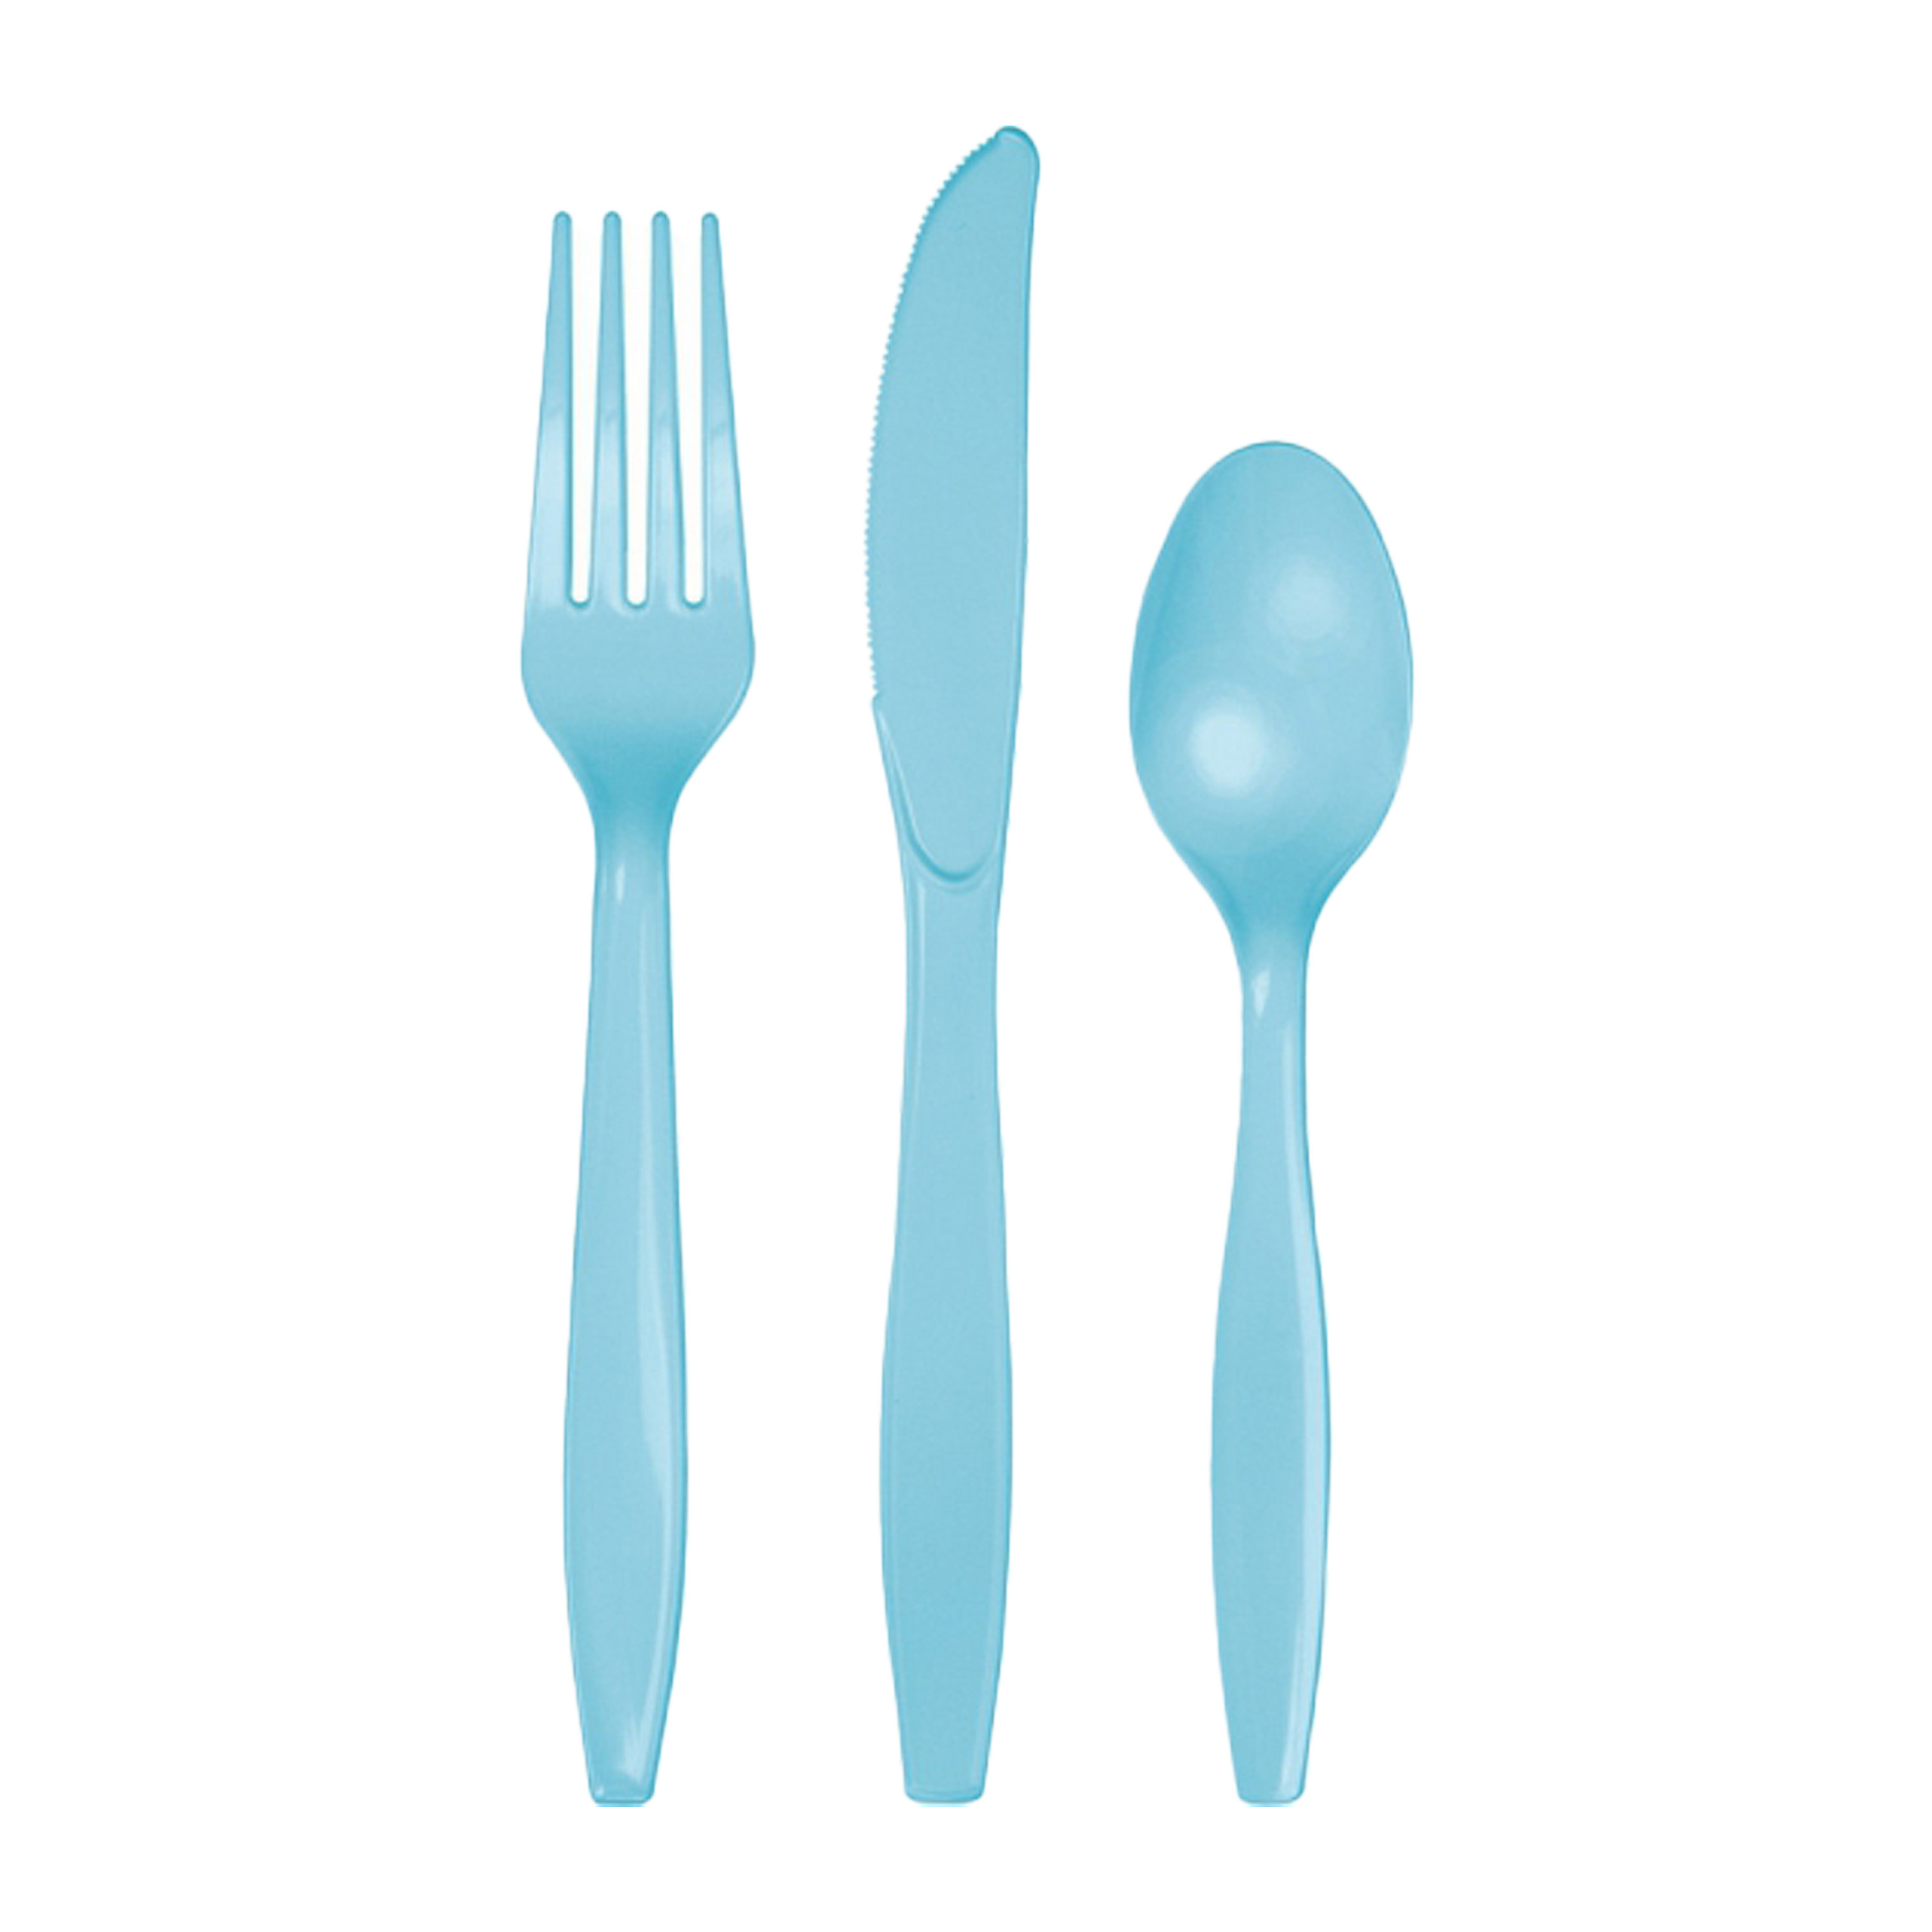 Kunststof bestek party-bbq setje 24x delig lichtblauw messen-vorken-lepels herbruikbaar